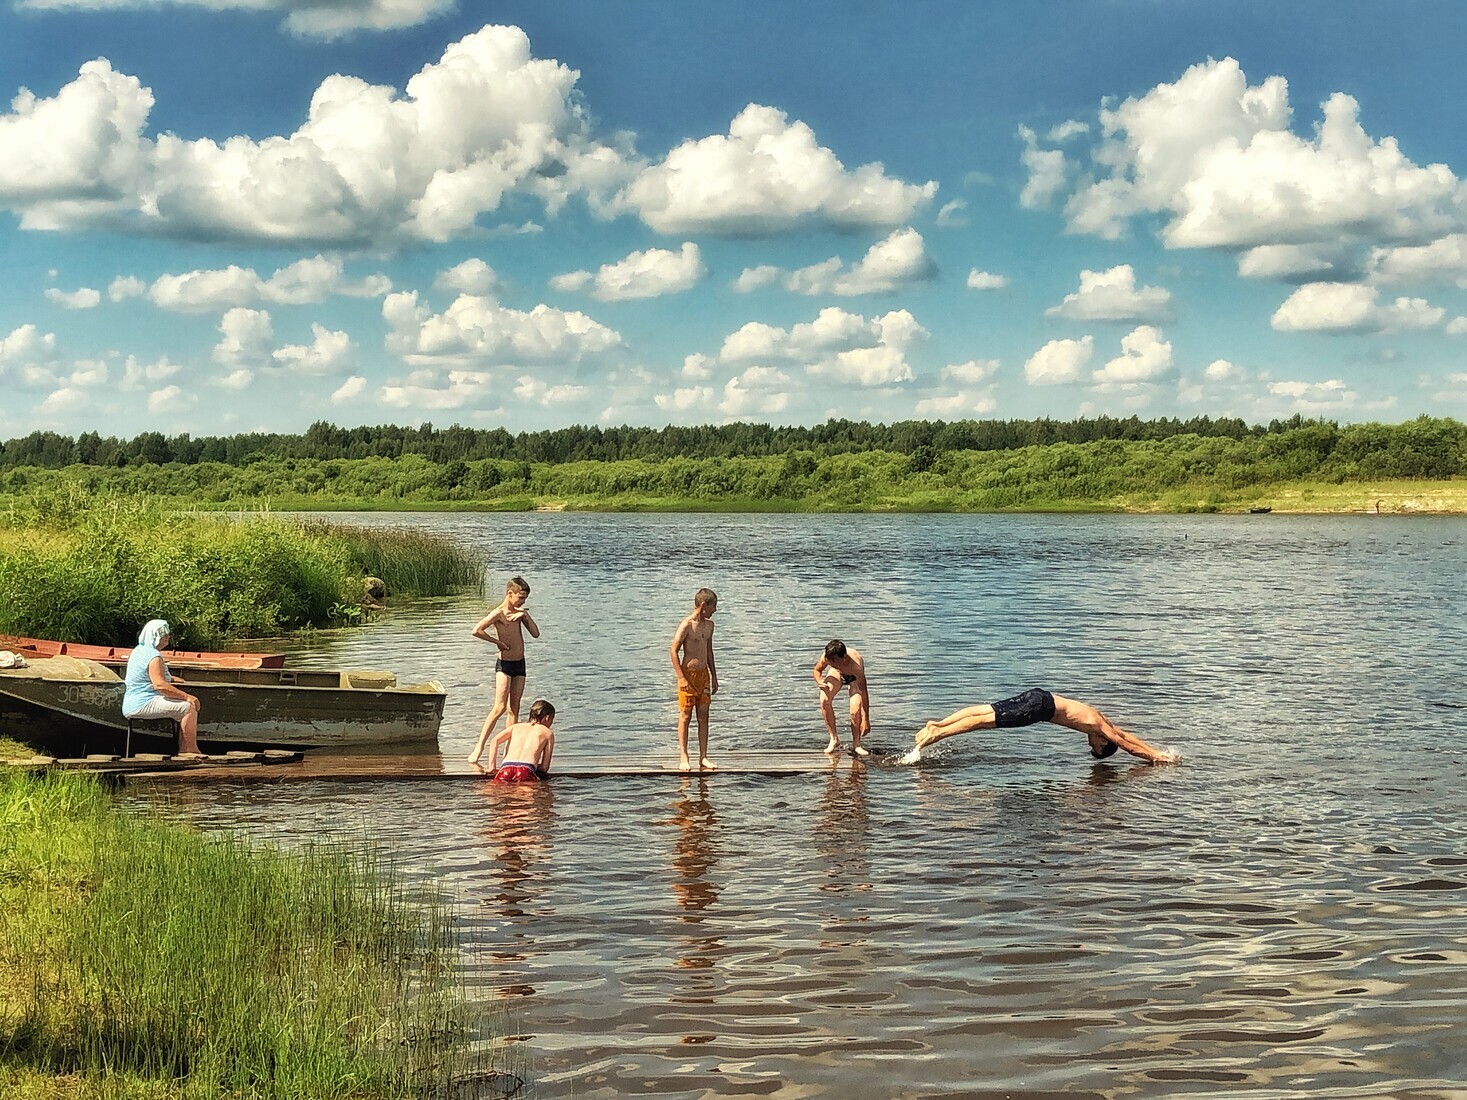 Финалист в номинации «Снято на смартфон», 2021. «Лето в деревне». Автор Илья Морозов